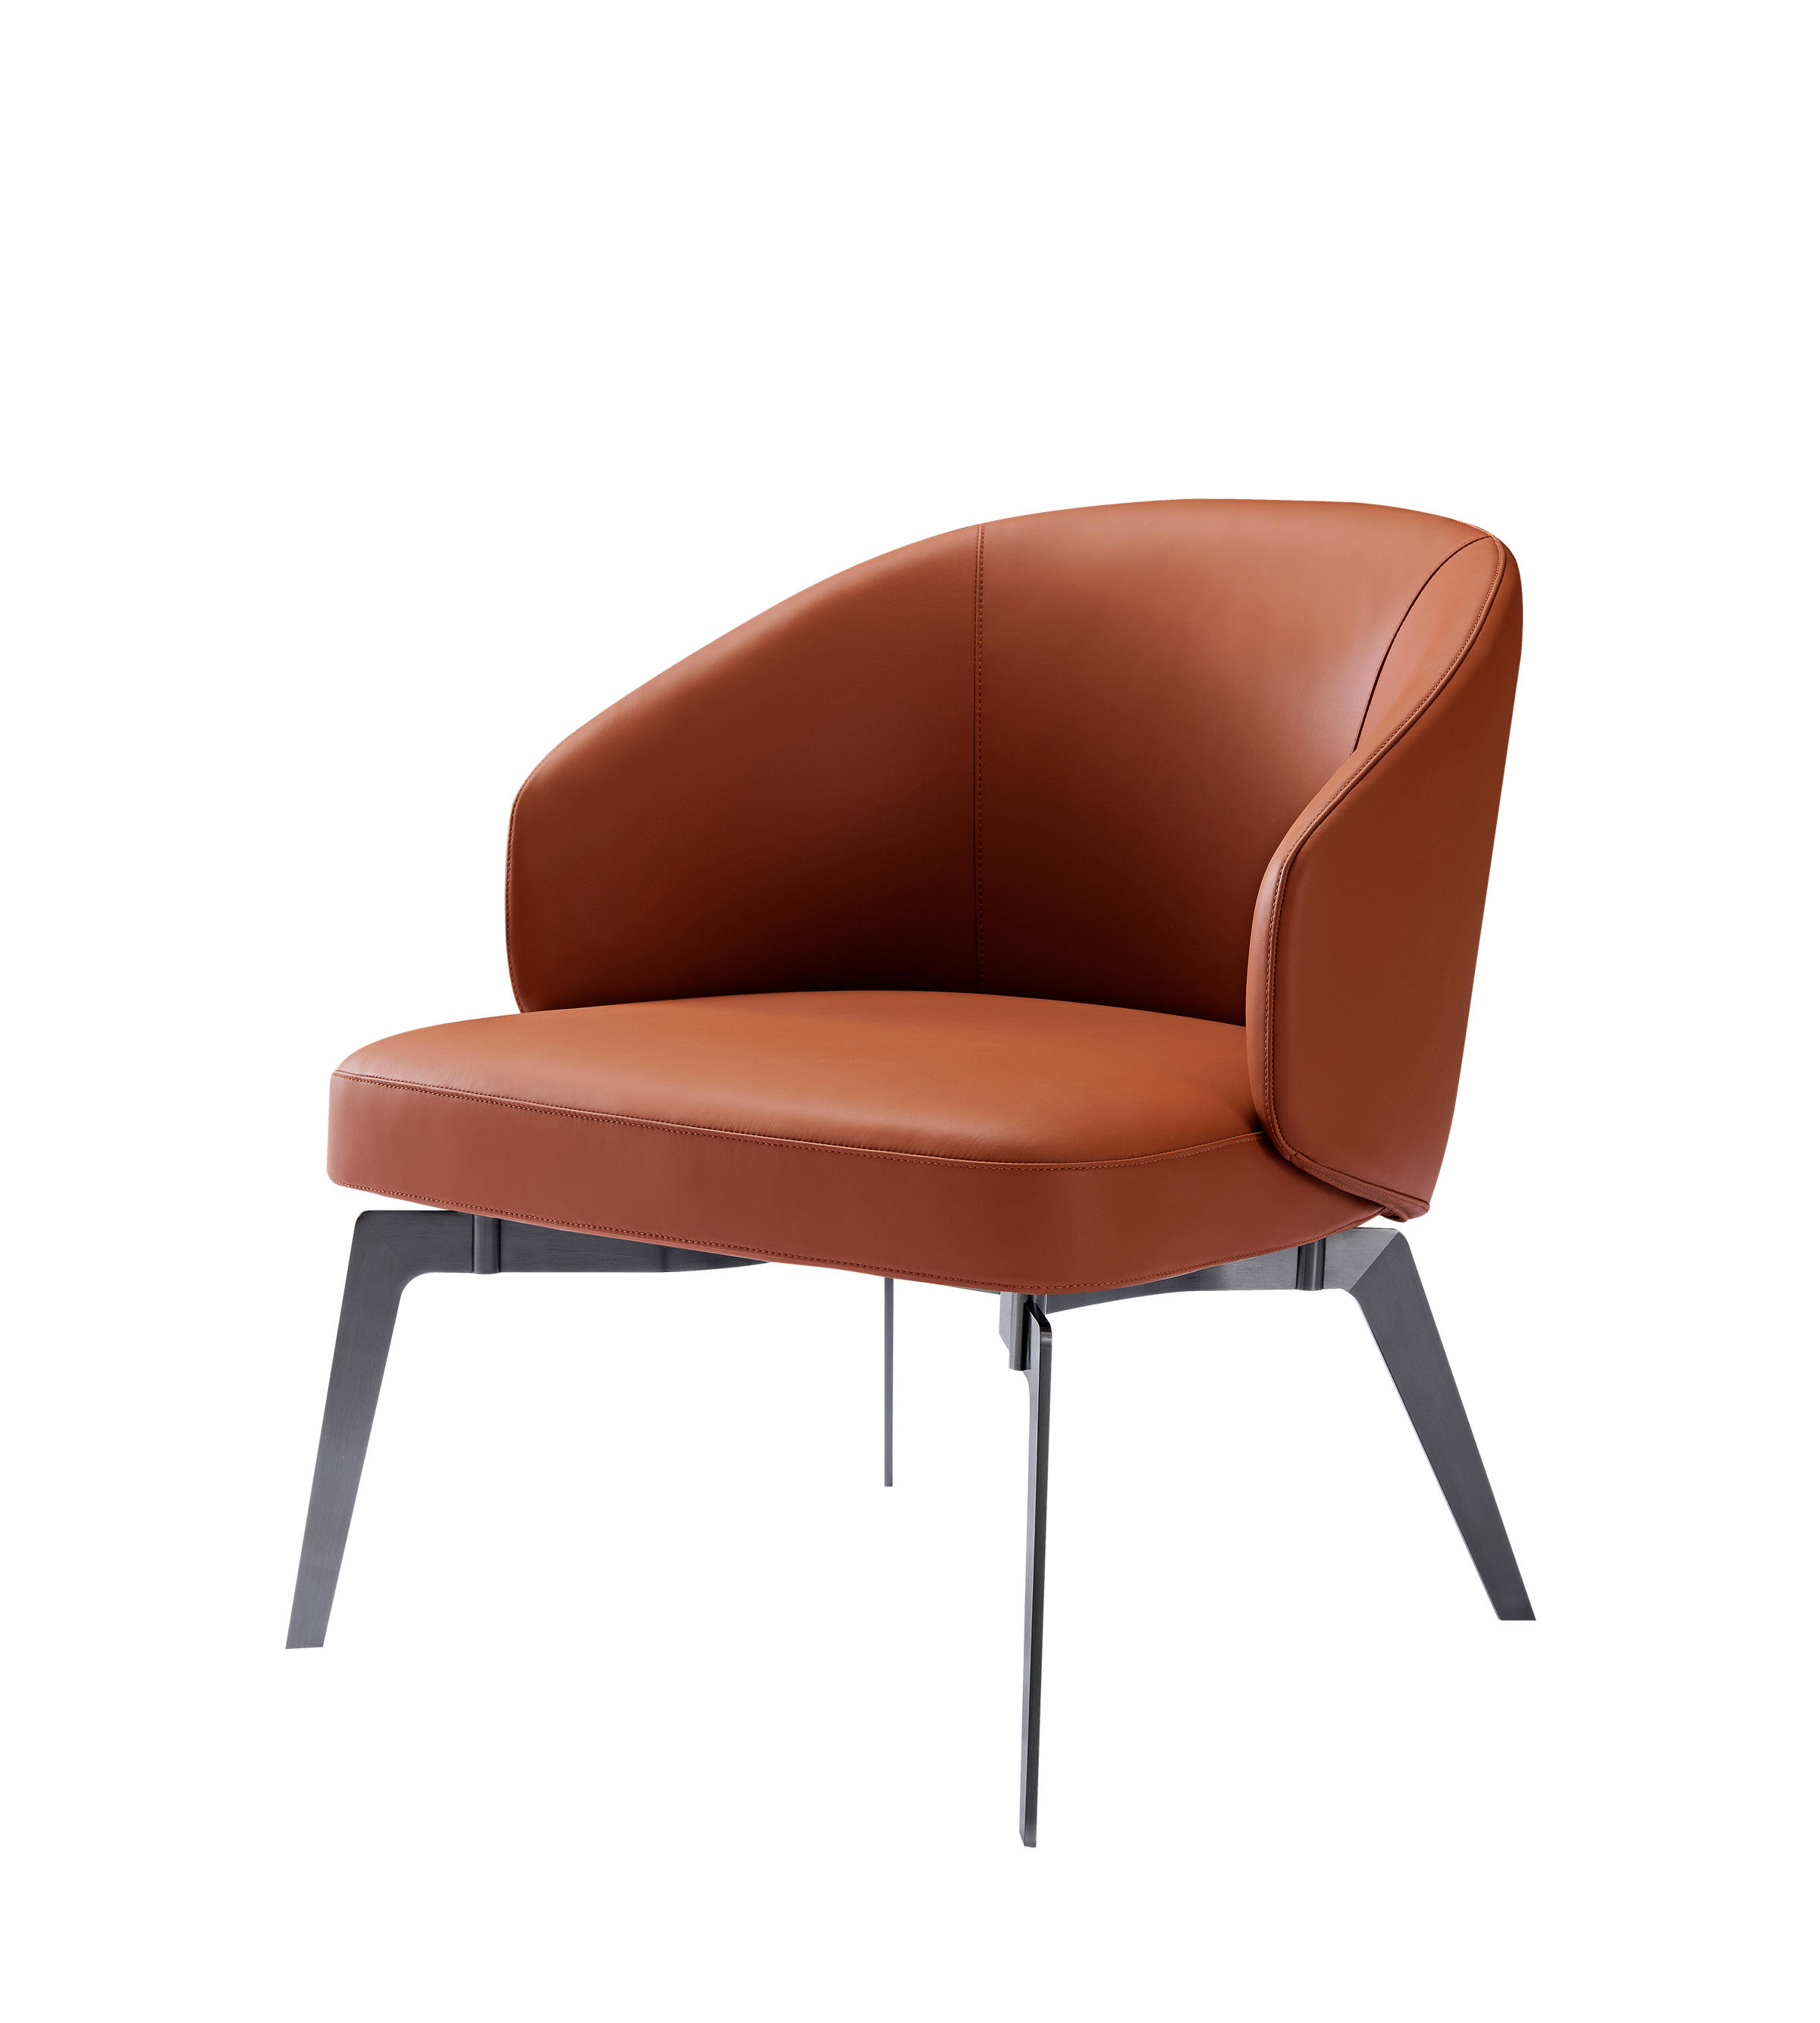 Bespoke Leisure Chair | Leisure Chair Design